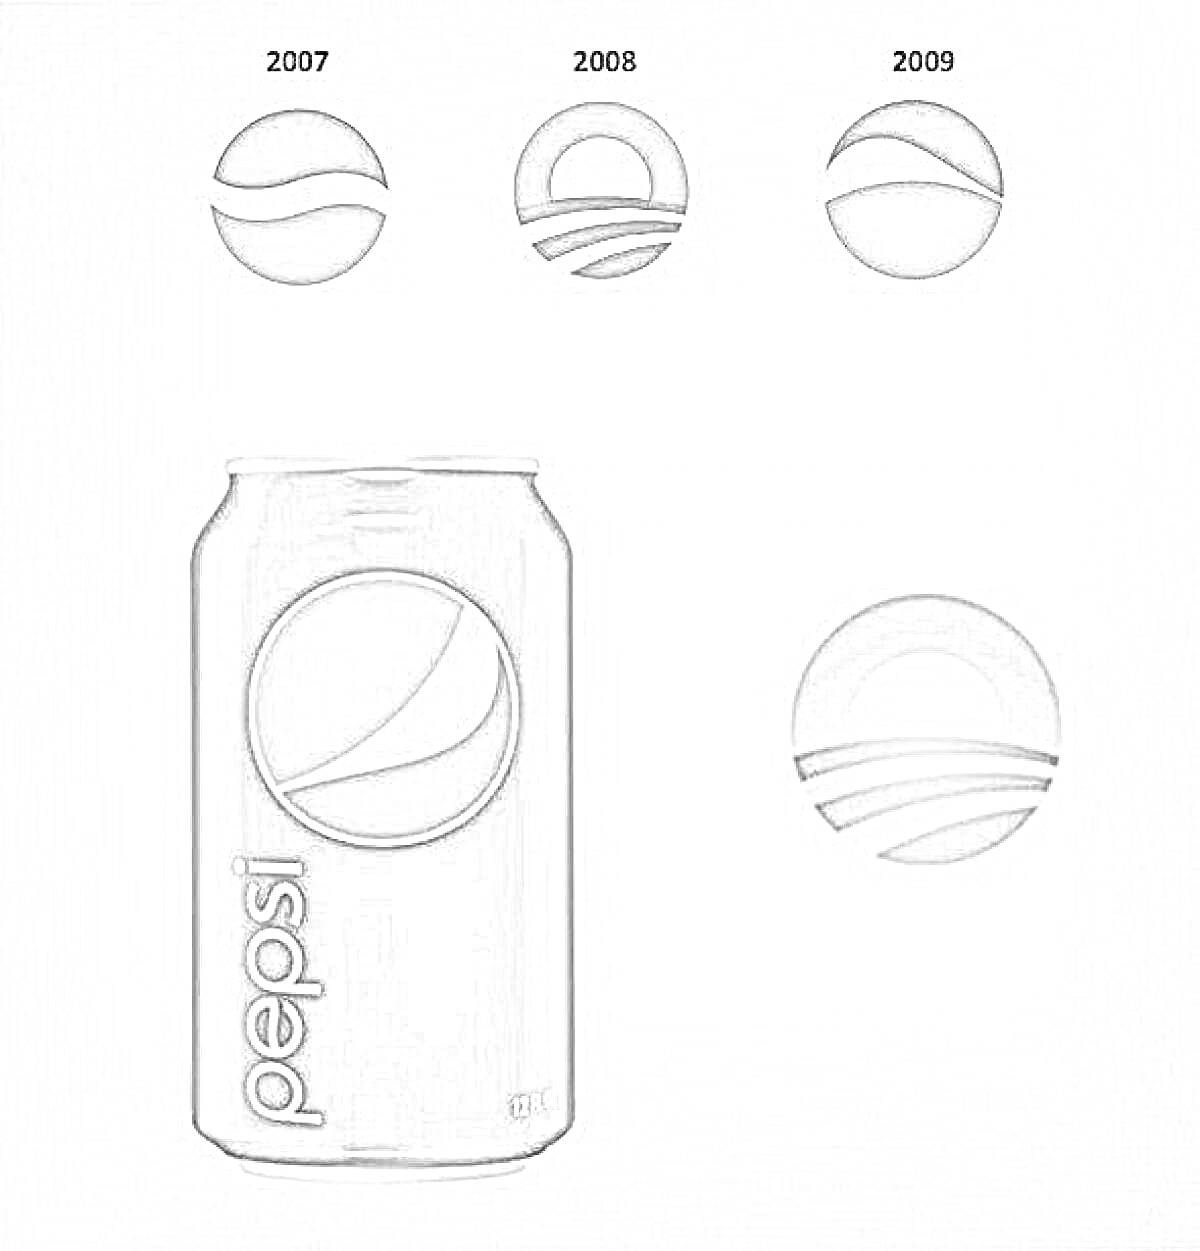 Раскраска Банка с логотипом Pepsi и логотипы 2007, 2008 и 2009 годов